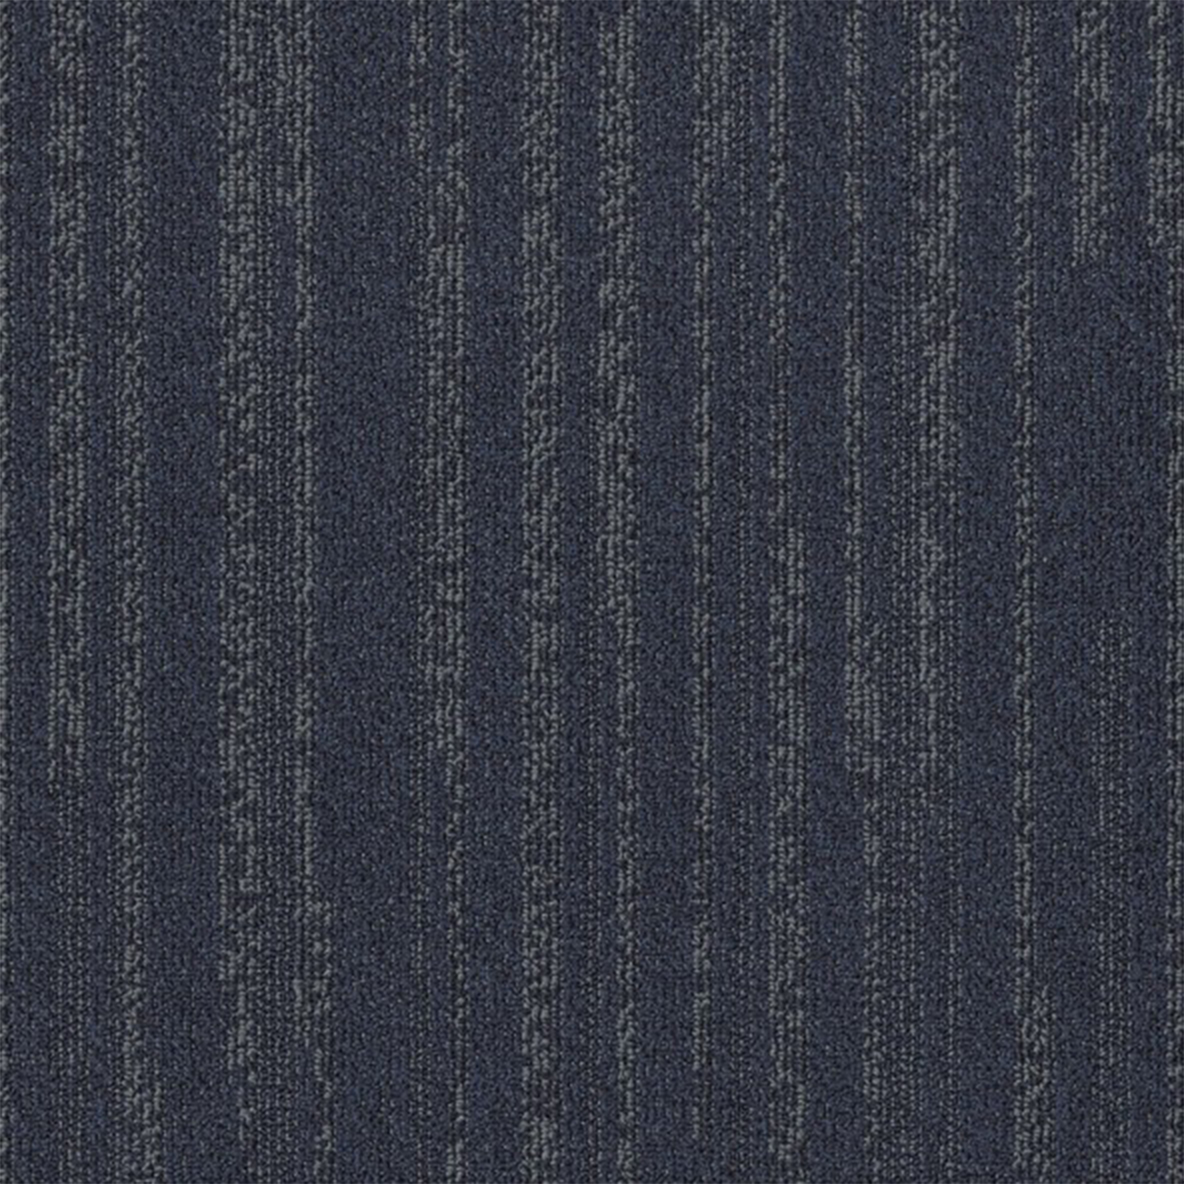 Sapphire color close up Quicken Commercial Carpet Tile .42 Inch x 50x50 cm per Tile